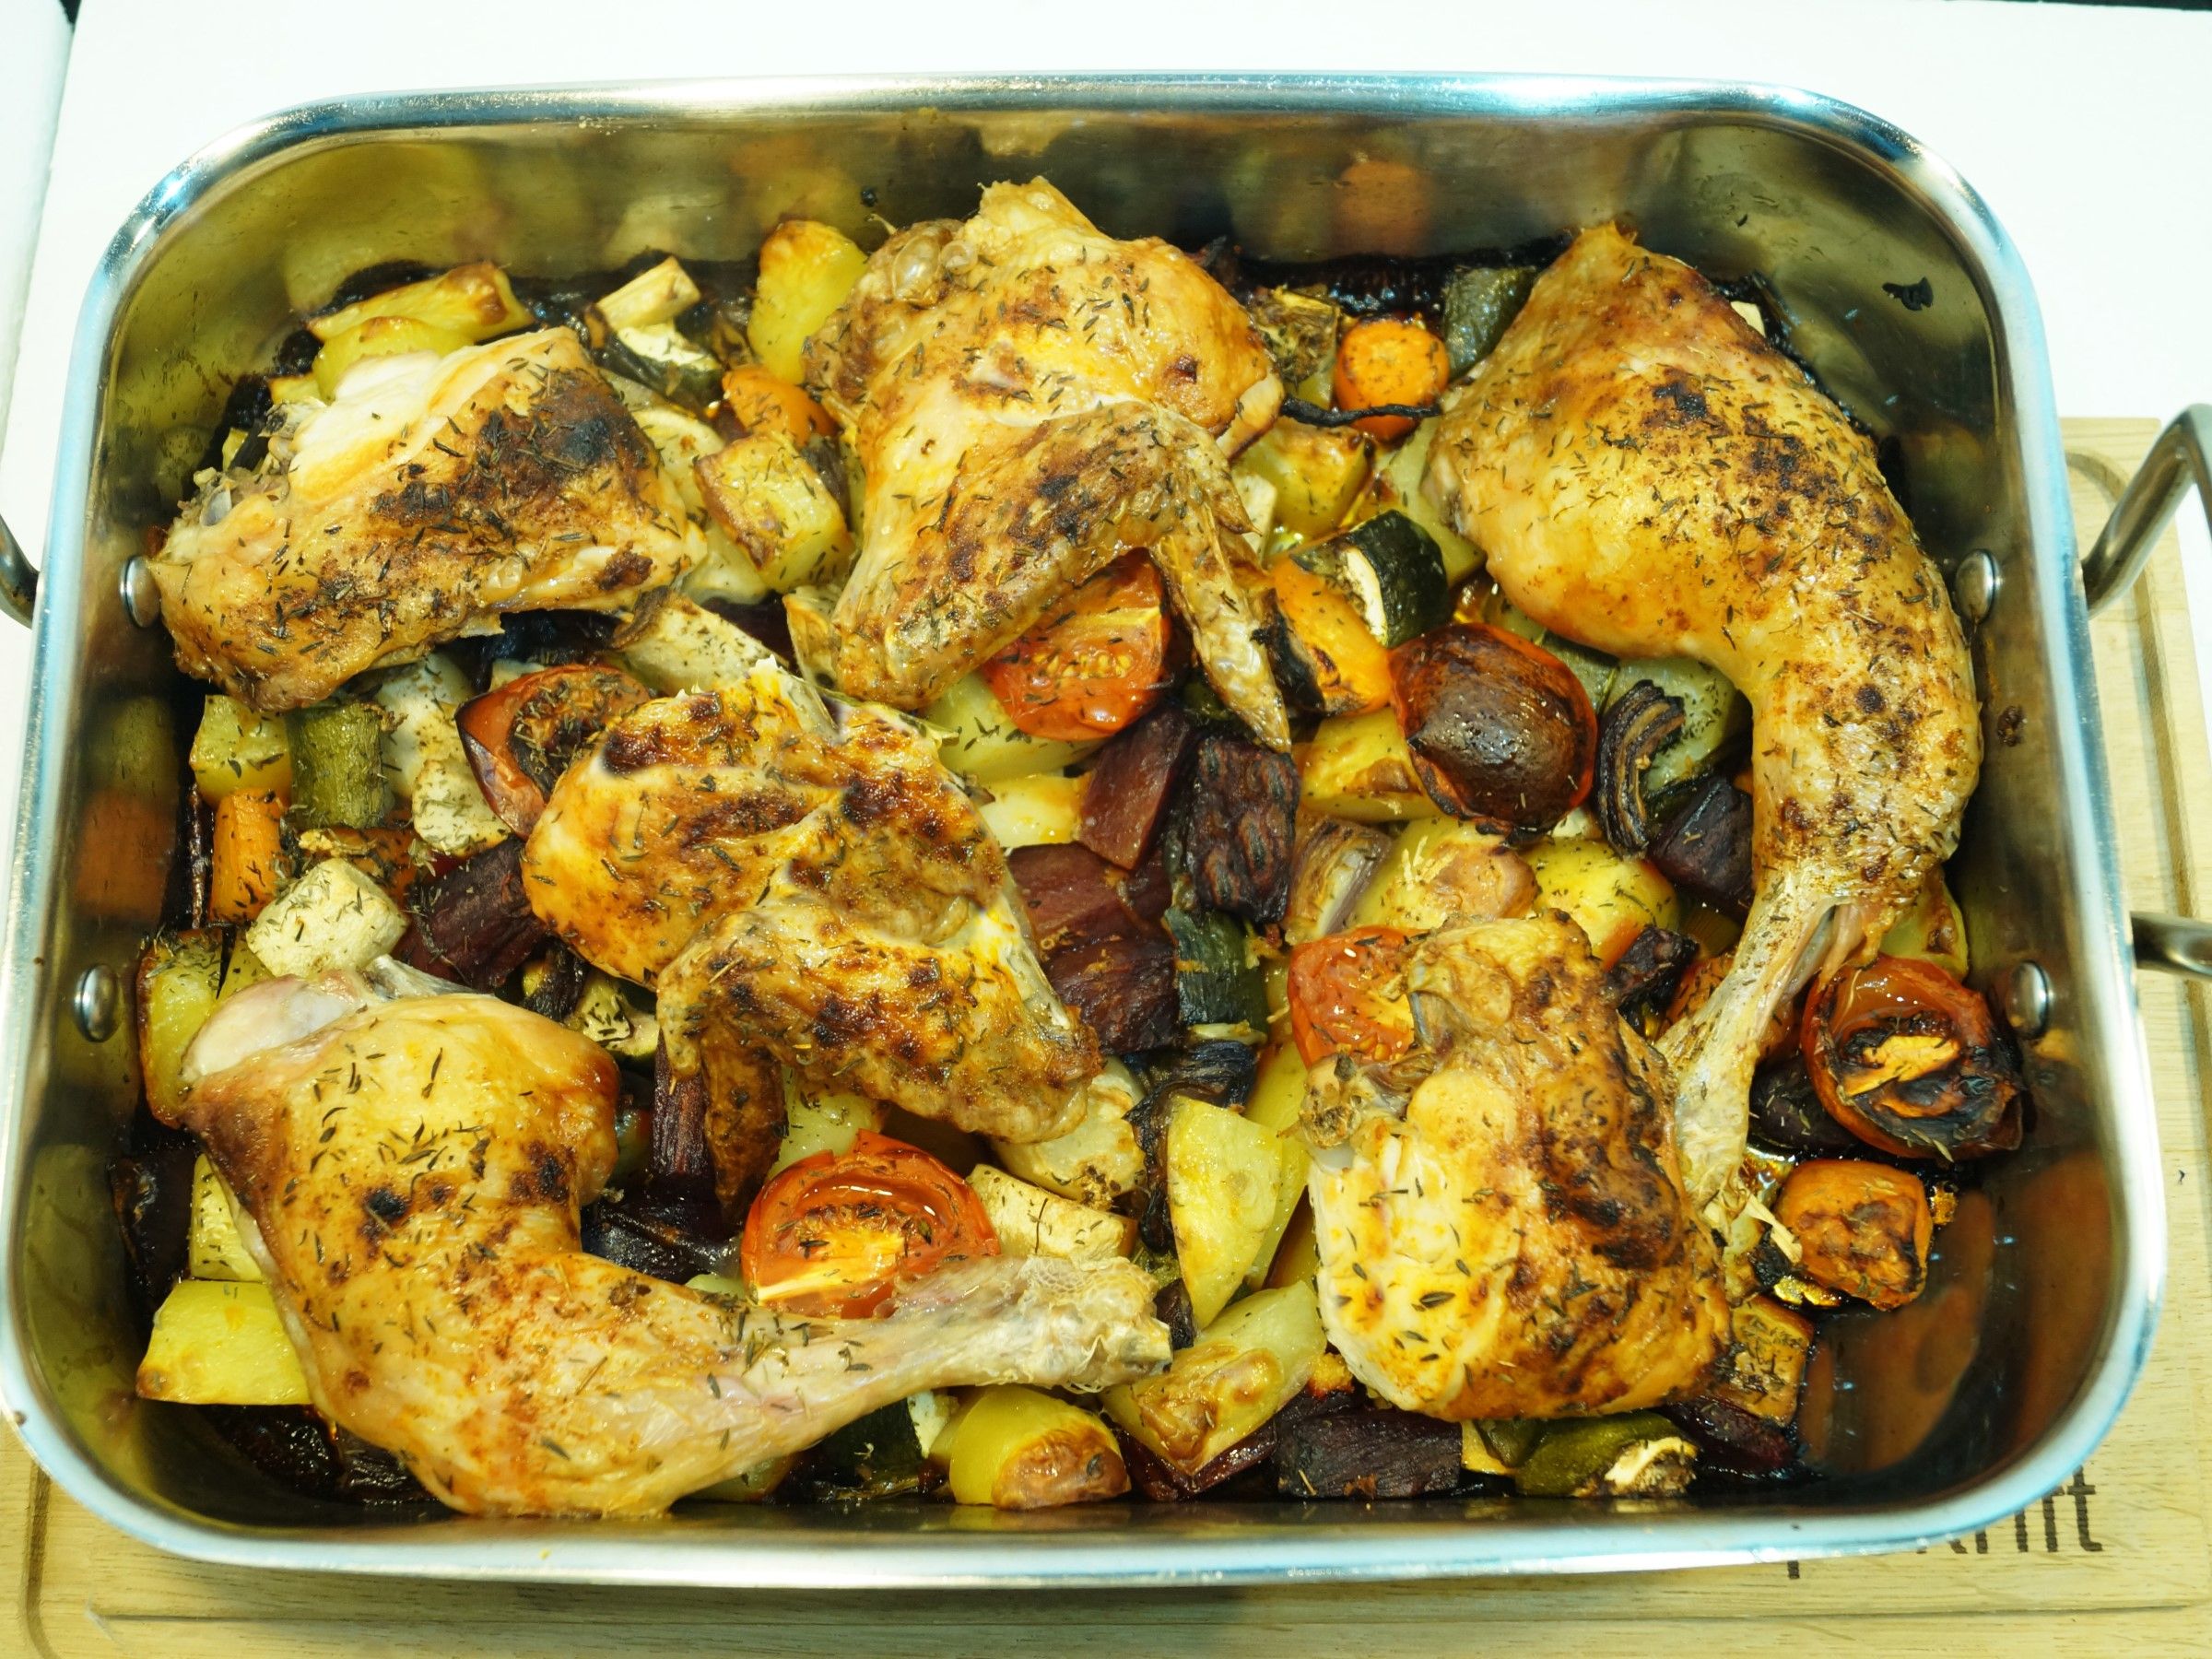 Ovnbagt kylling og grøntsager i ovn